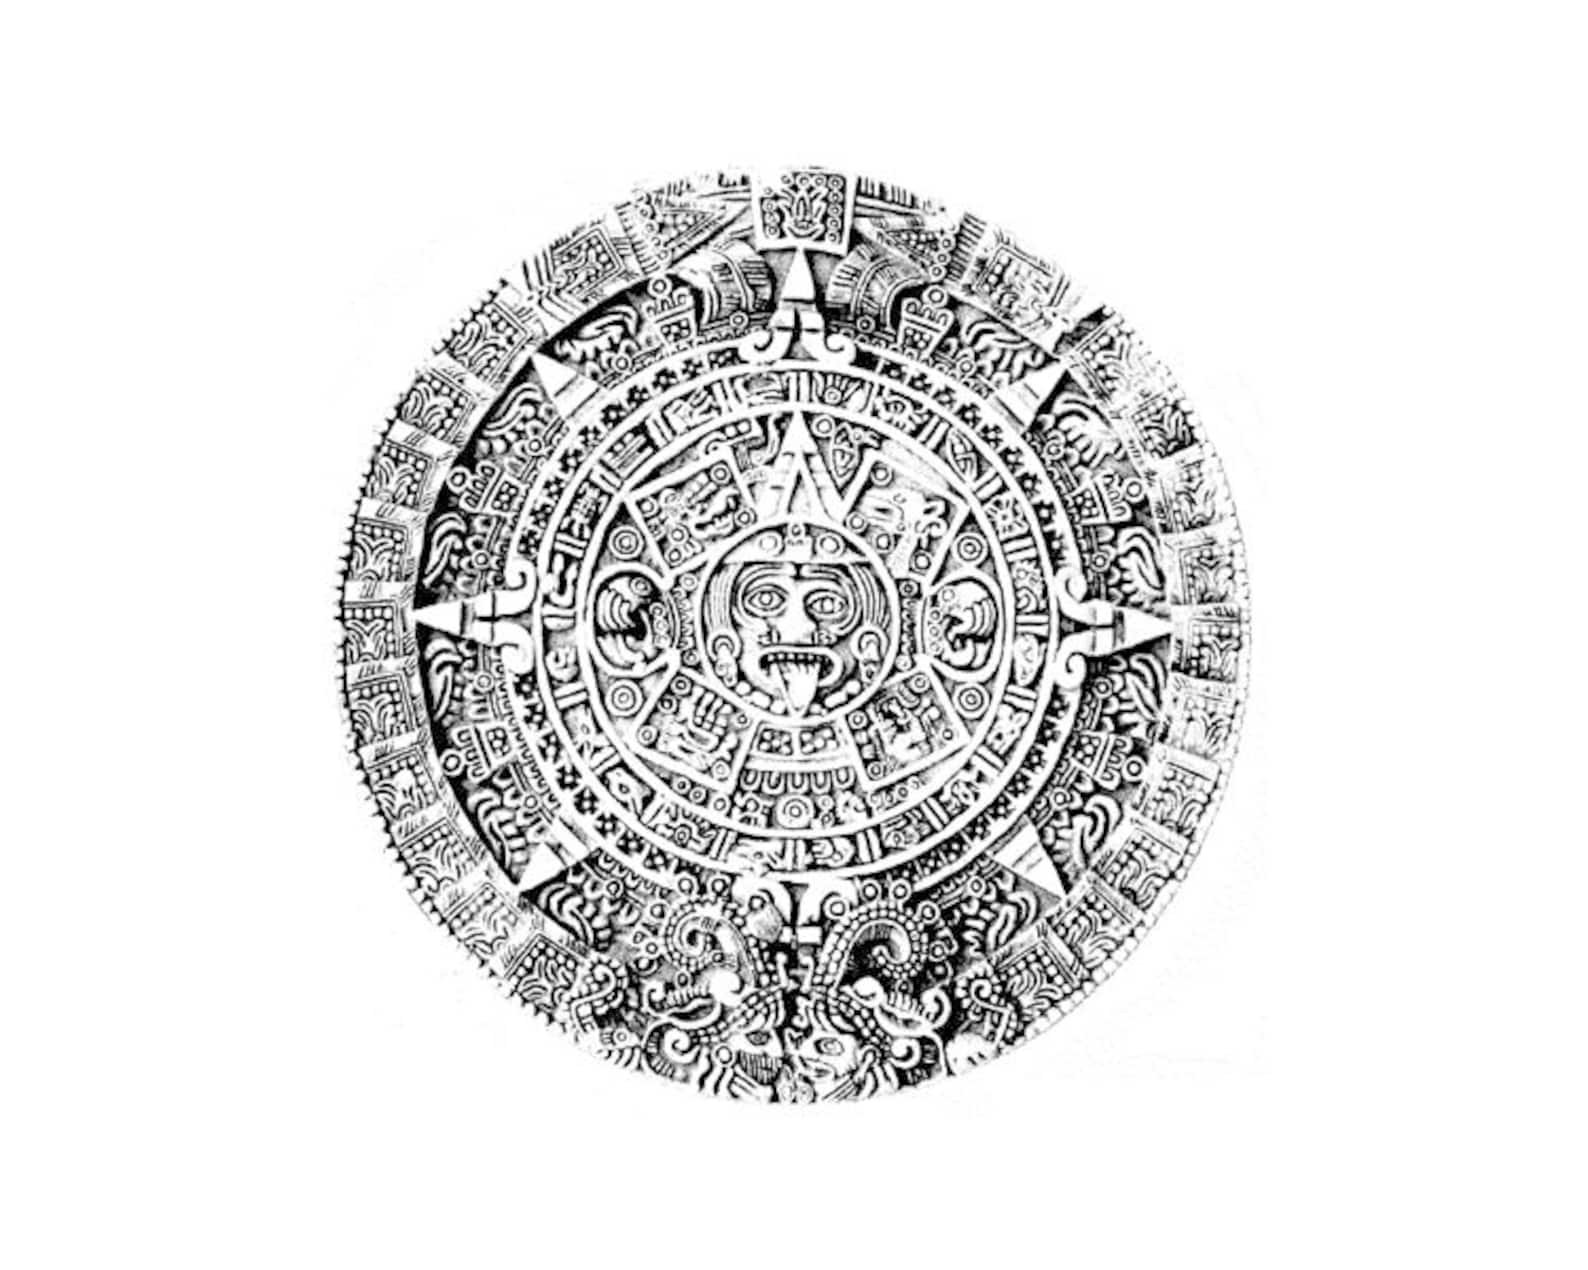 Краткий пересказ календарь майя по главам. Камень солнца ацтеков. Солнечный календарь Майя. Колеса Ацтек. Круглый календарь Майя.